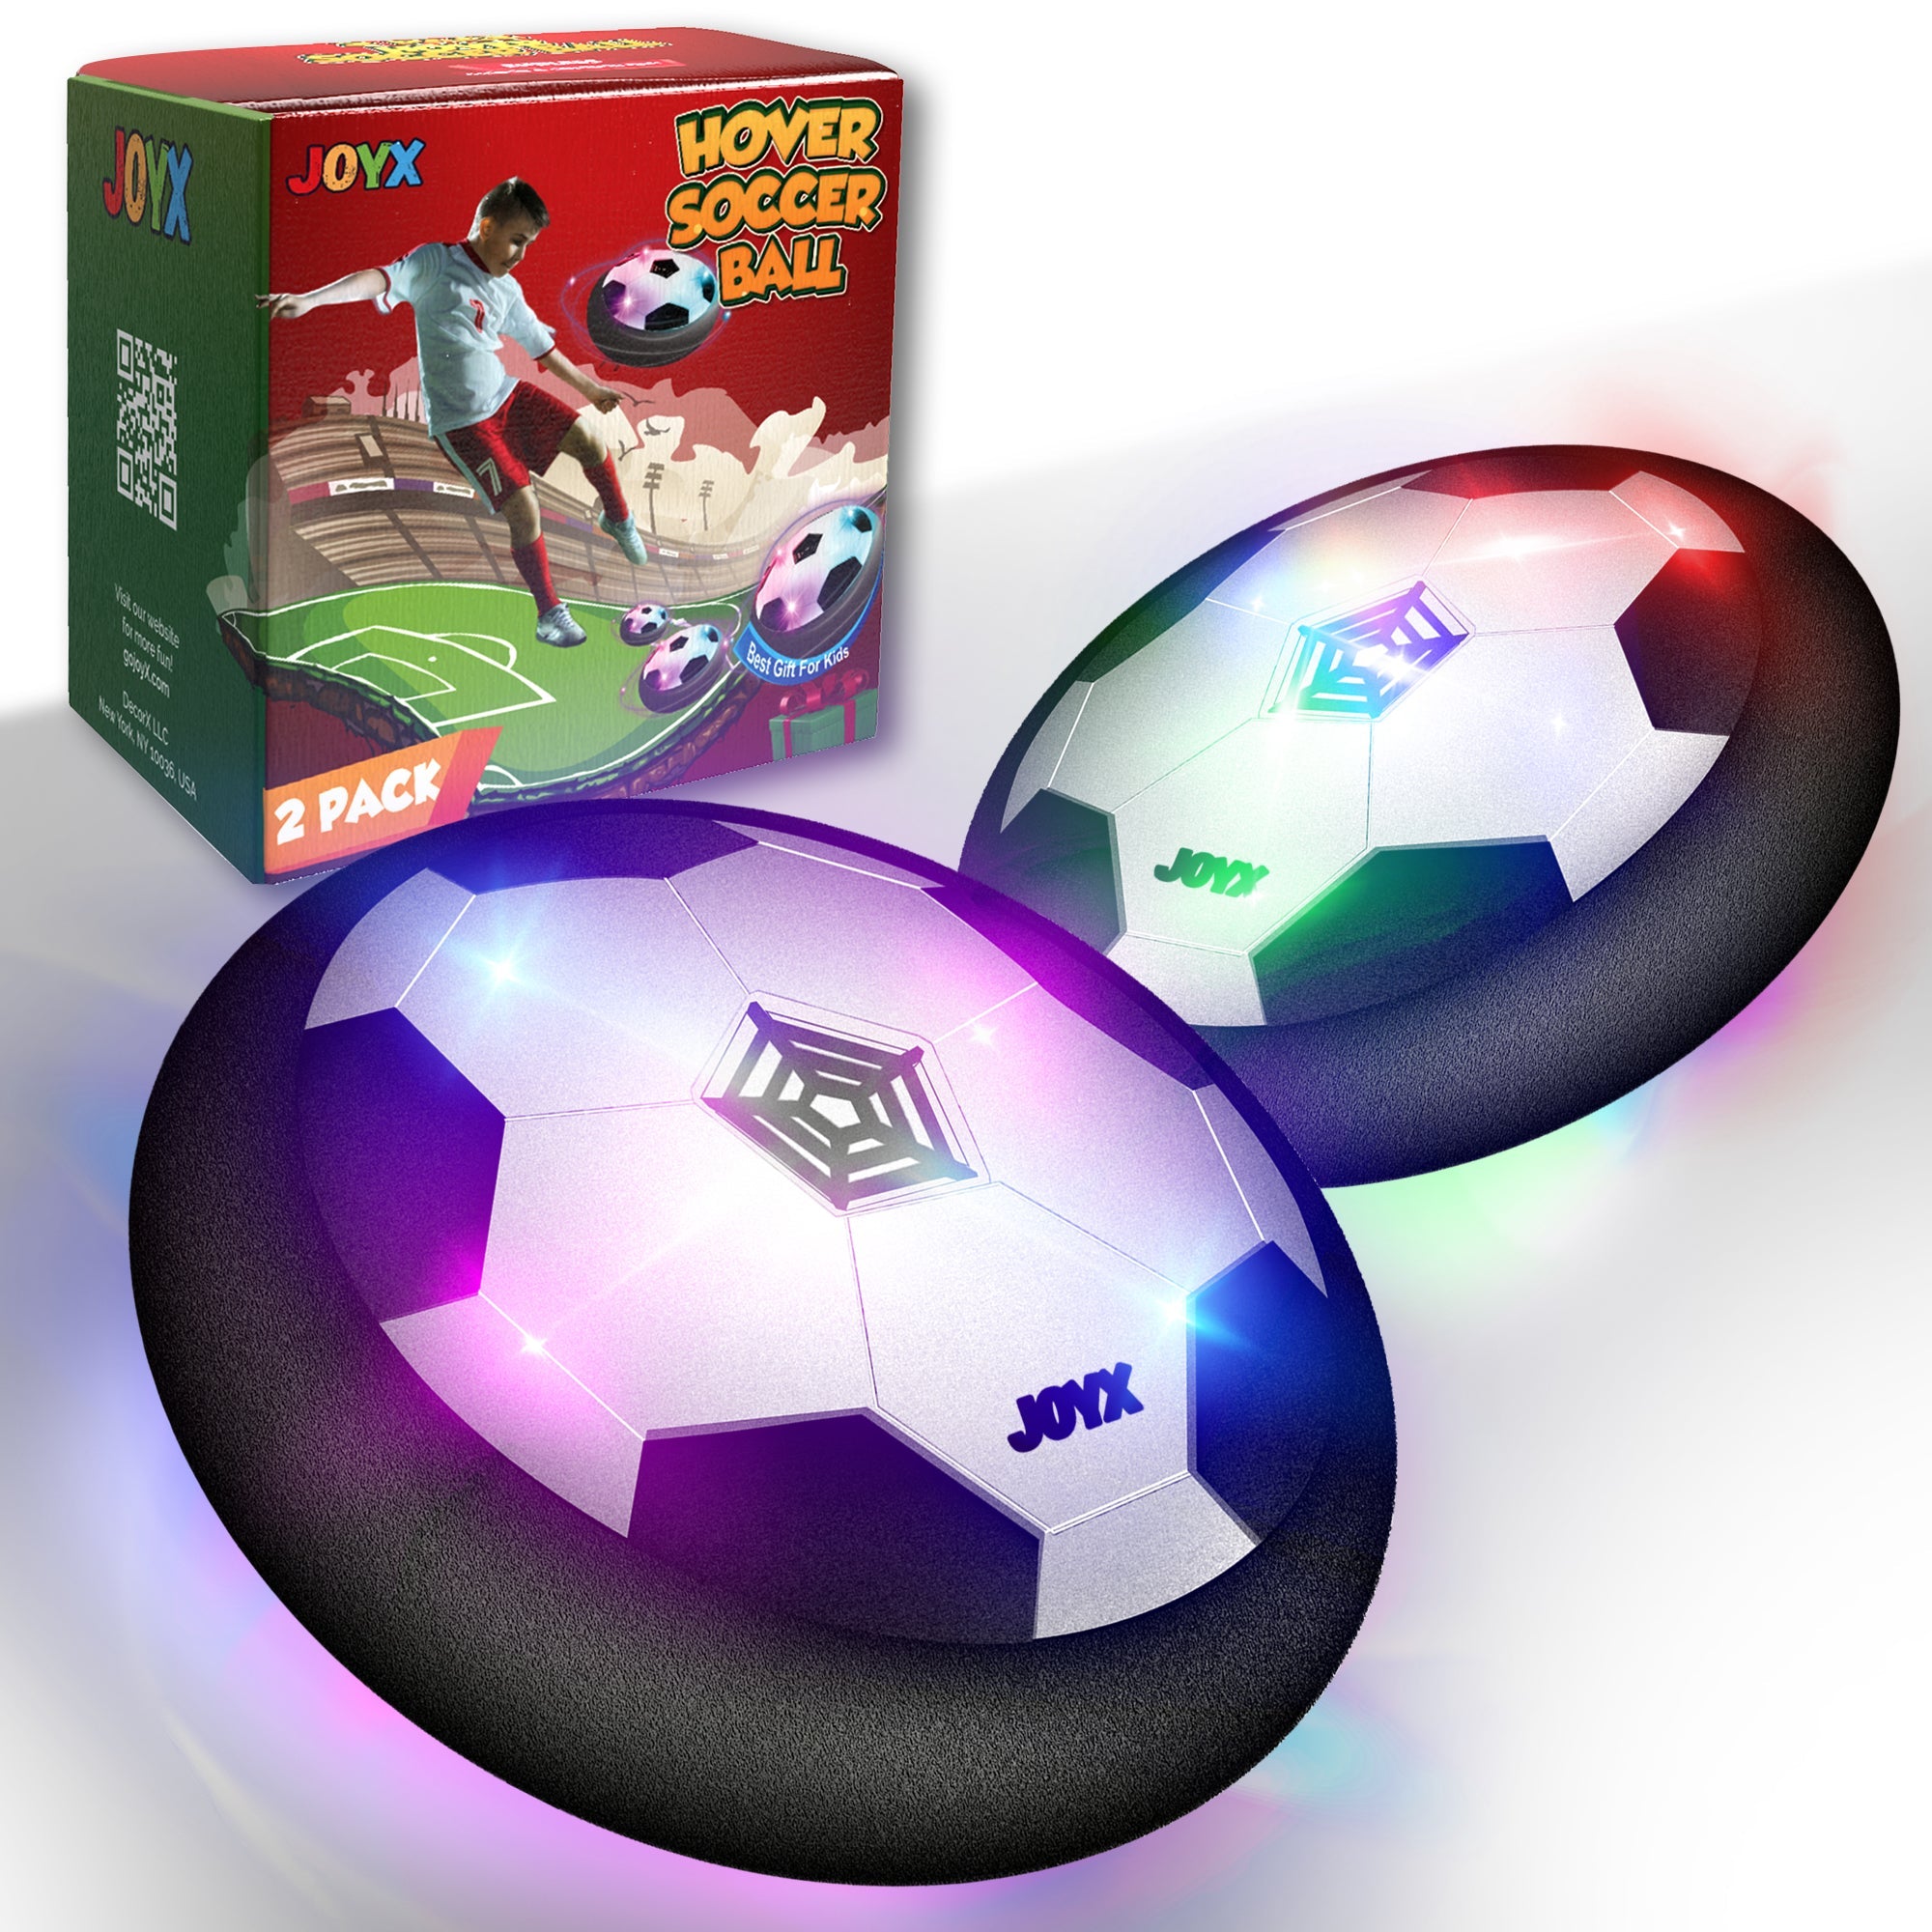 https_www.gojoyx.com_hover-soccer-ball-toy.jpg